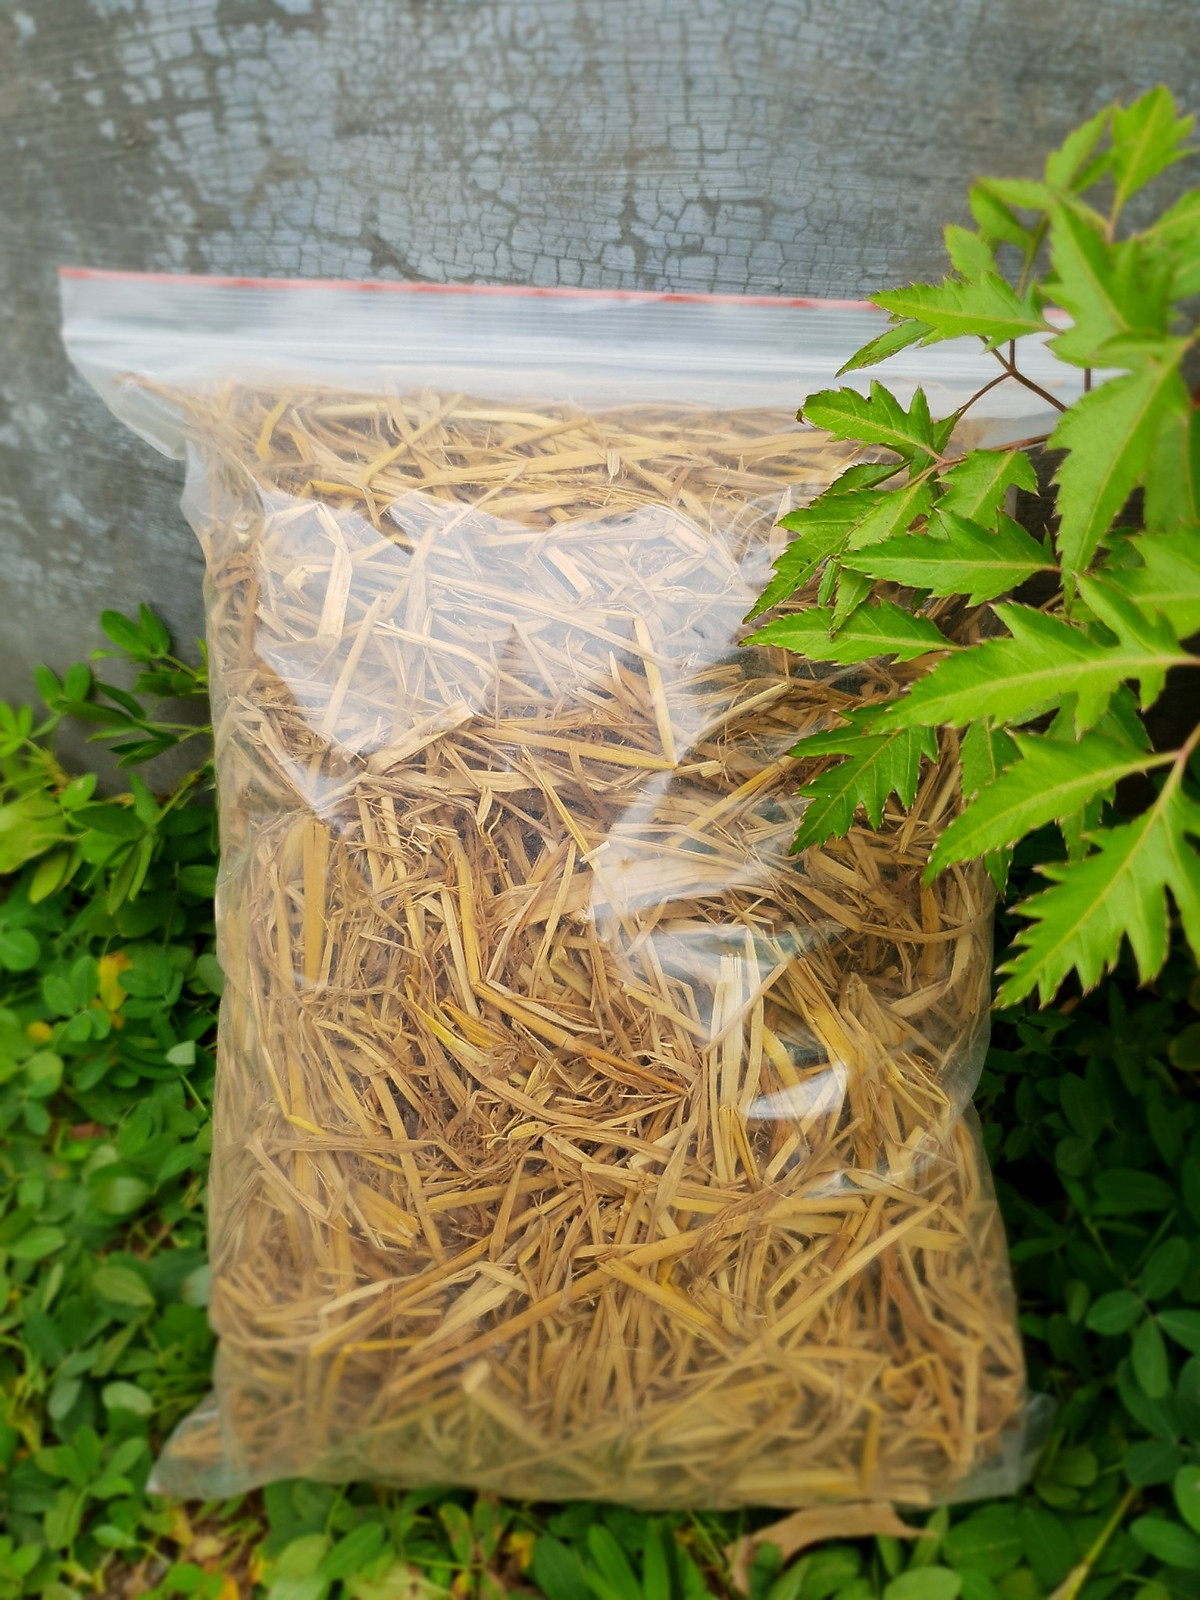 Rơm khô tự nhiên ECO Straw.100% tự nhiên.Làm vườn - Trang trí - Làm giá thể trồng nấm.Đóng gói 1Kg